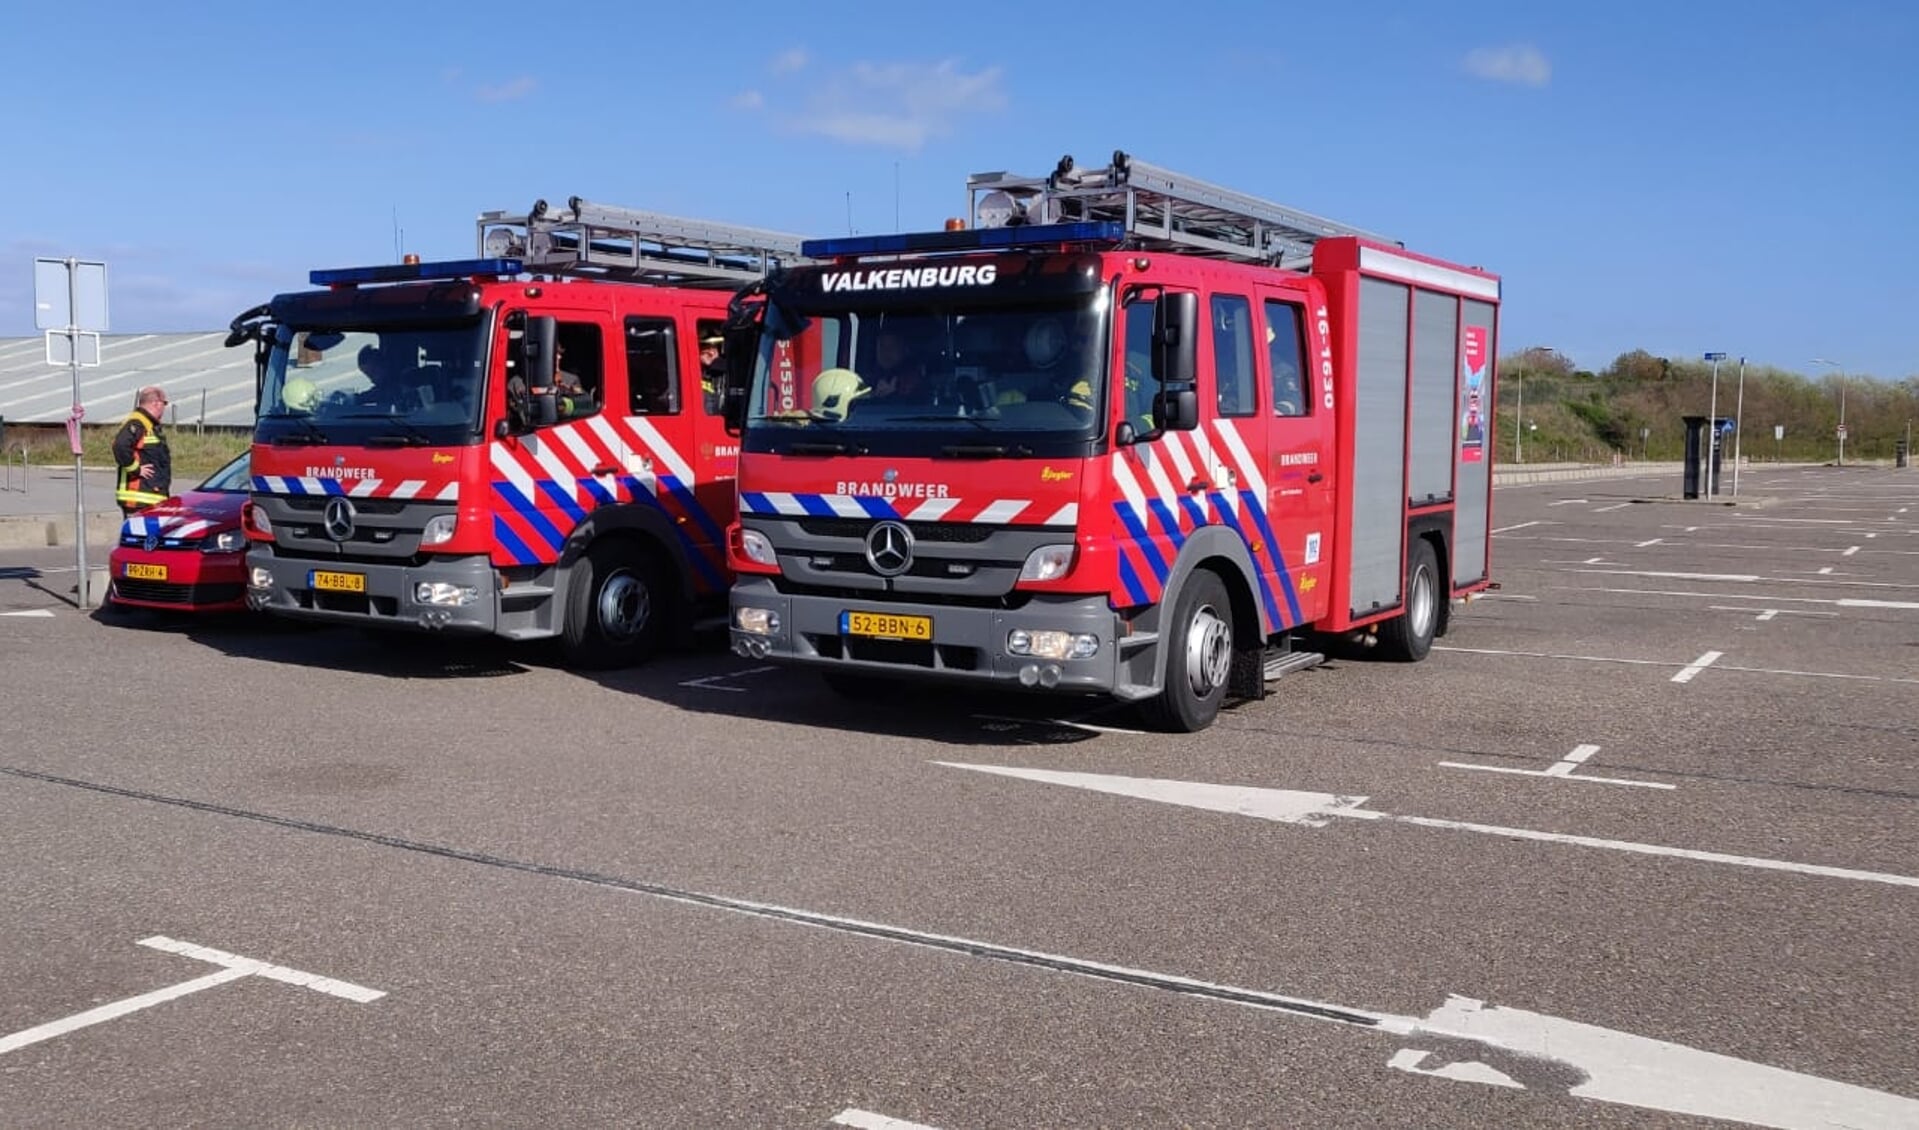 De brandweerwagens van Rijnsburg en Valkenburg bij een eerdere inzet.